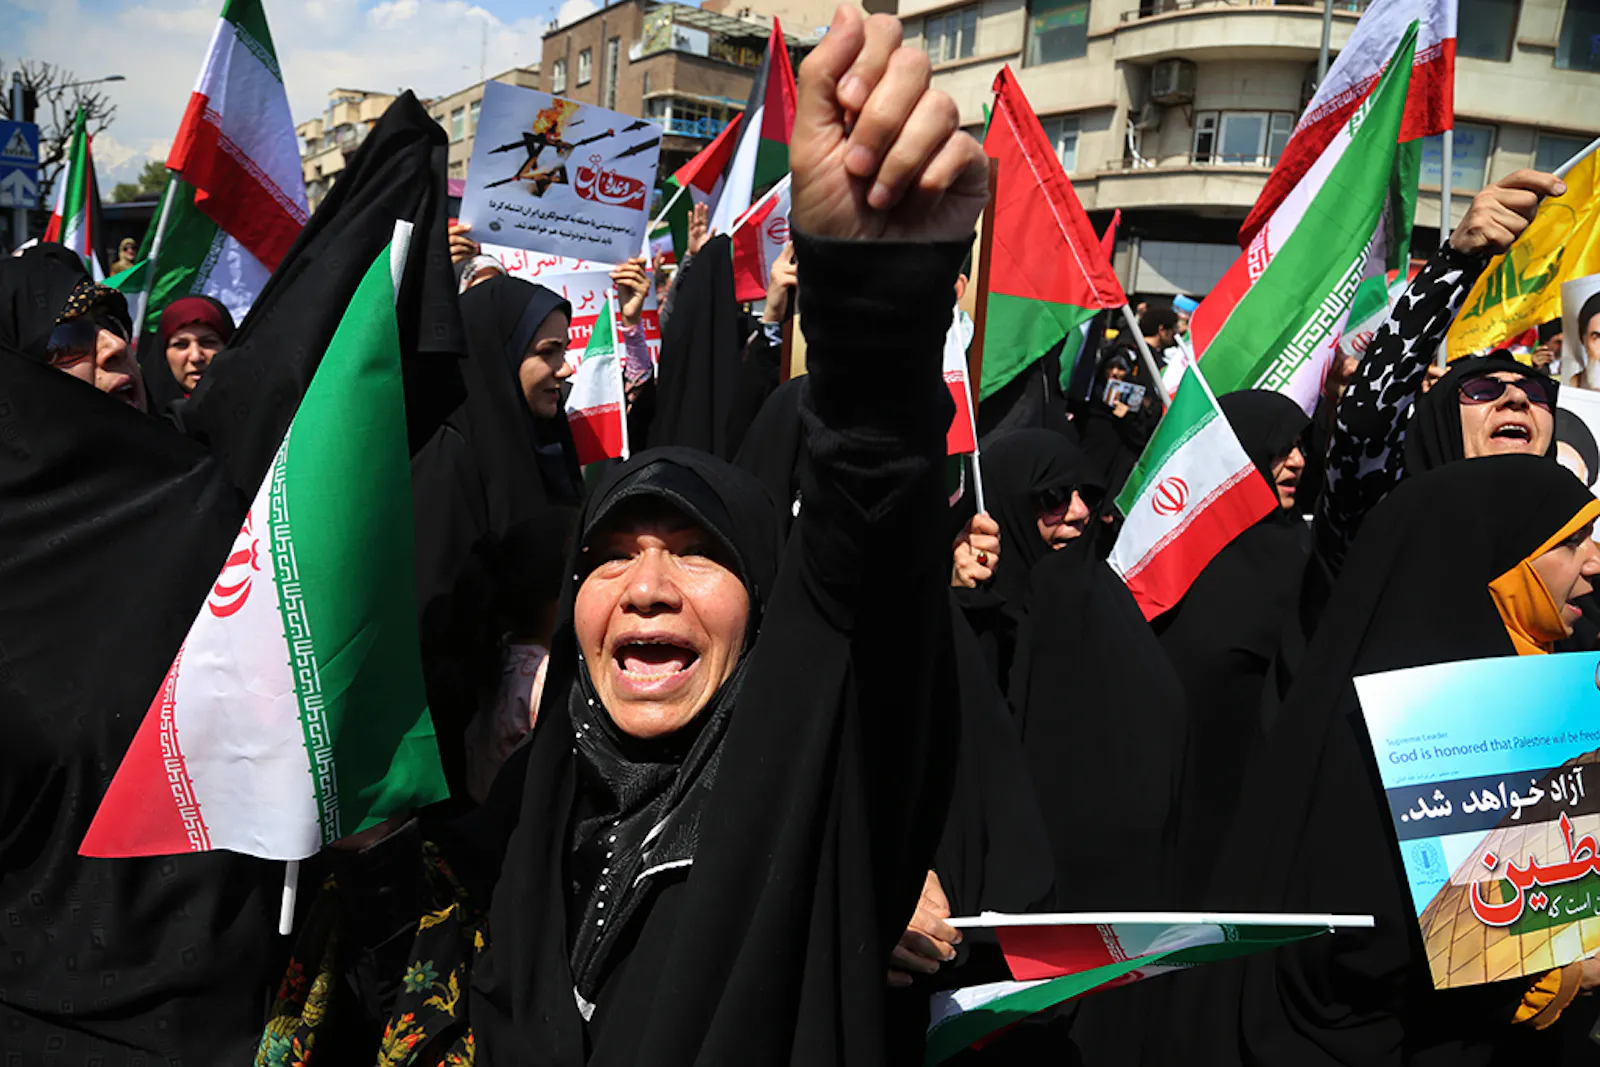 Jubelperserinnen bei einer heutigen Kundgebung im Iran